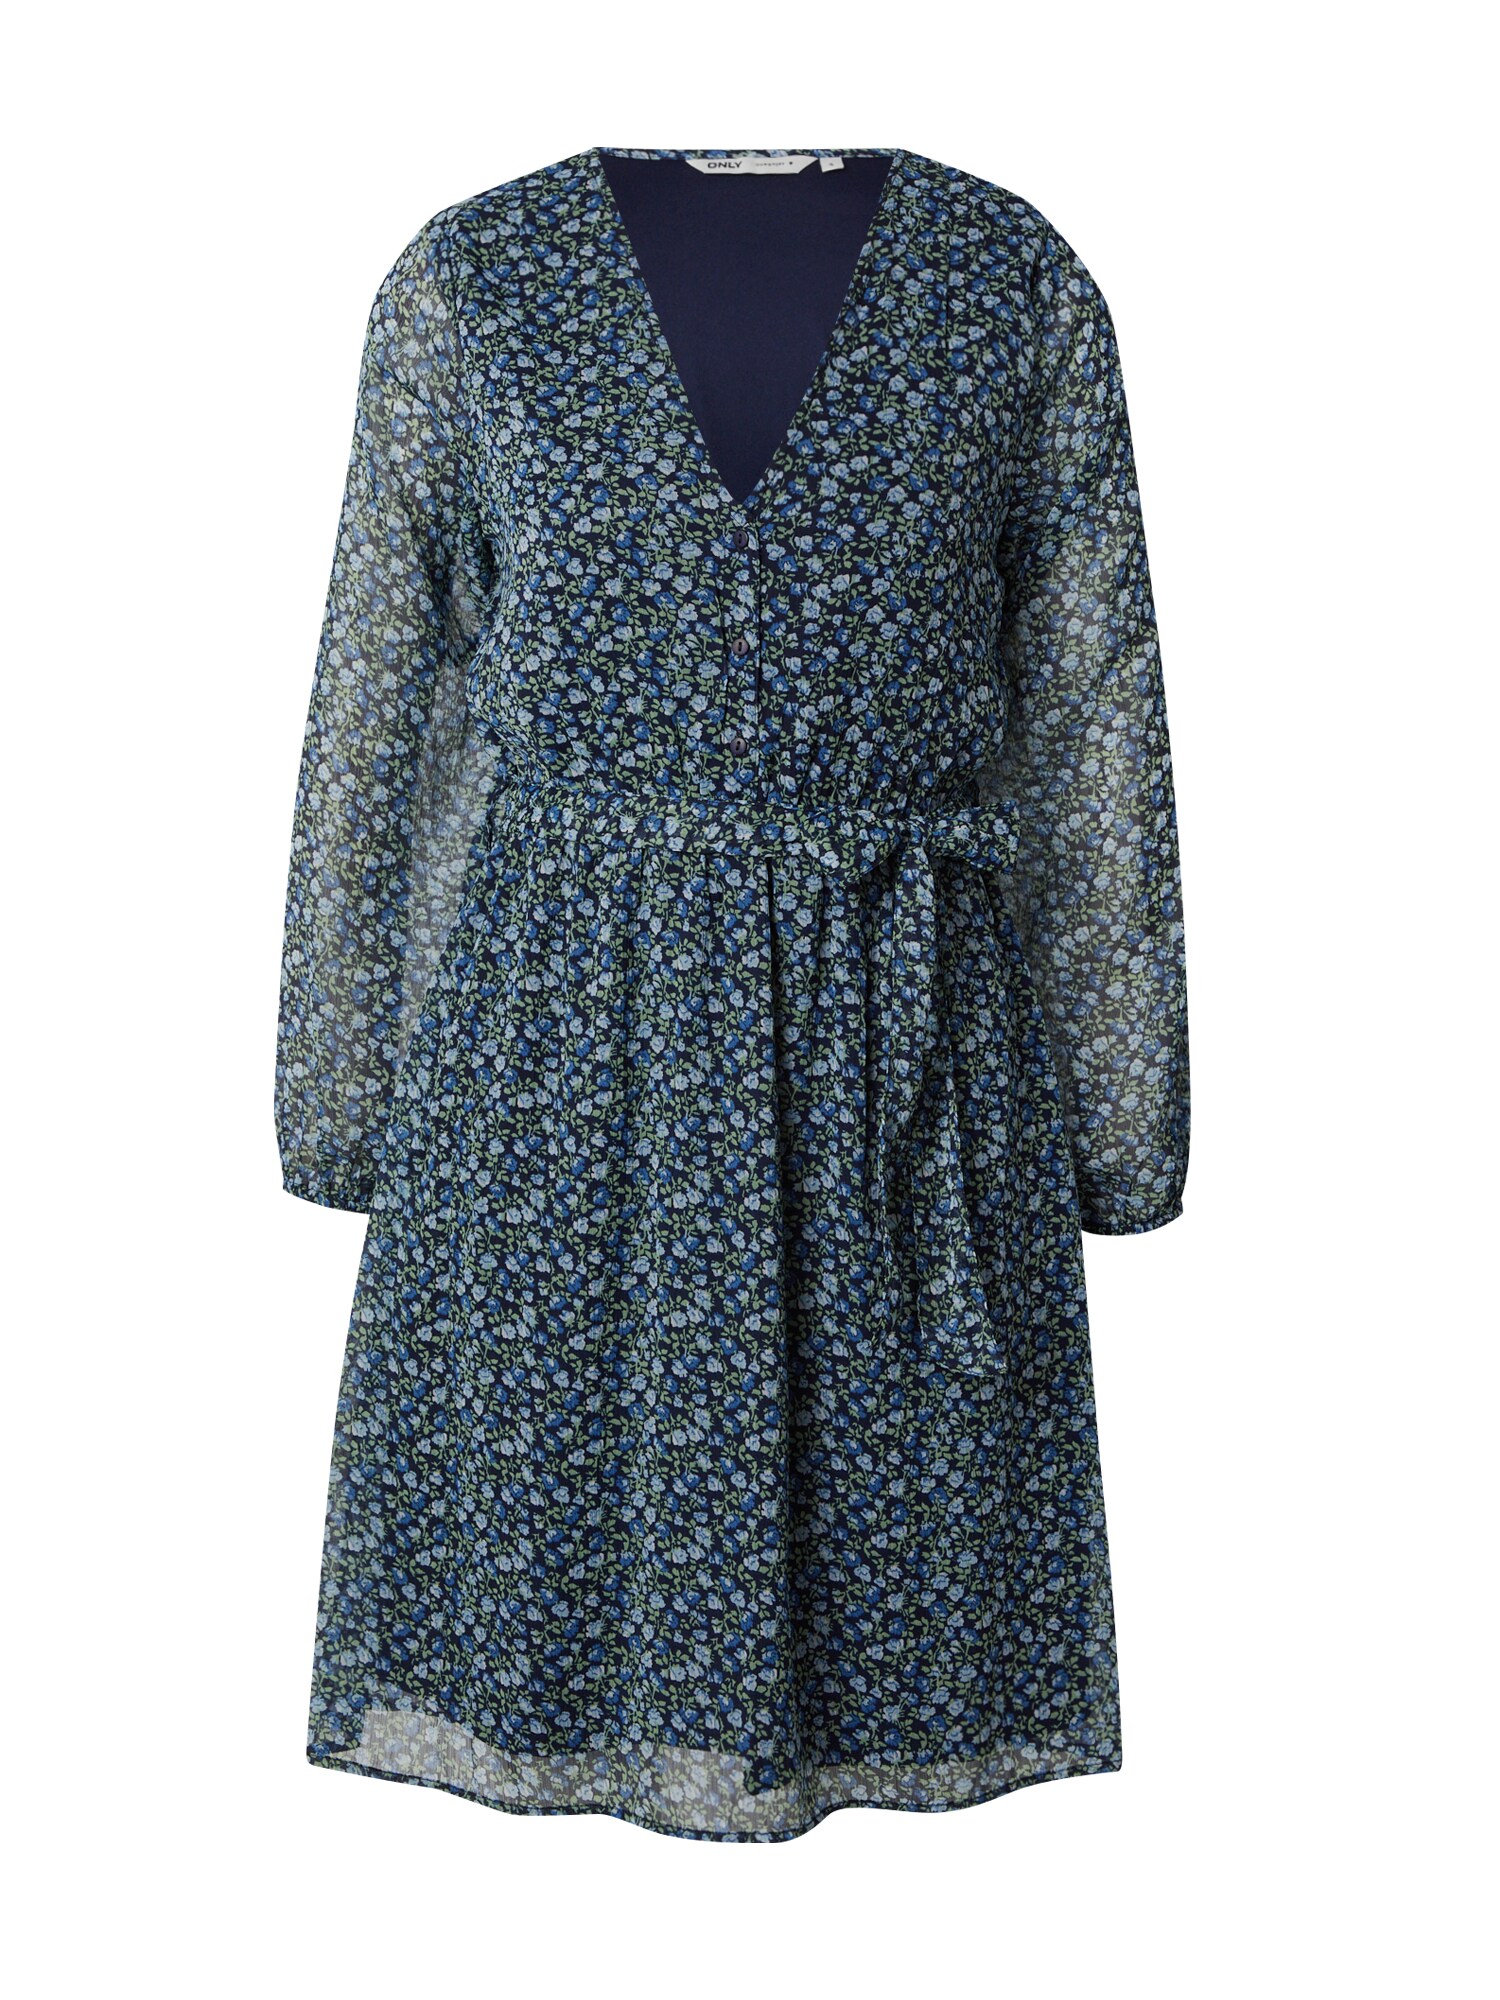 in \'Cera\', | 5715308434093 der Polyester, aus für Ladendirekt GTIN: Farbe Druckkleid Weiss, Preisvergleich Kleid